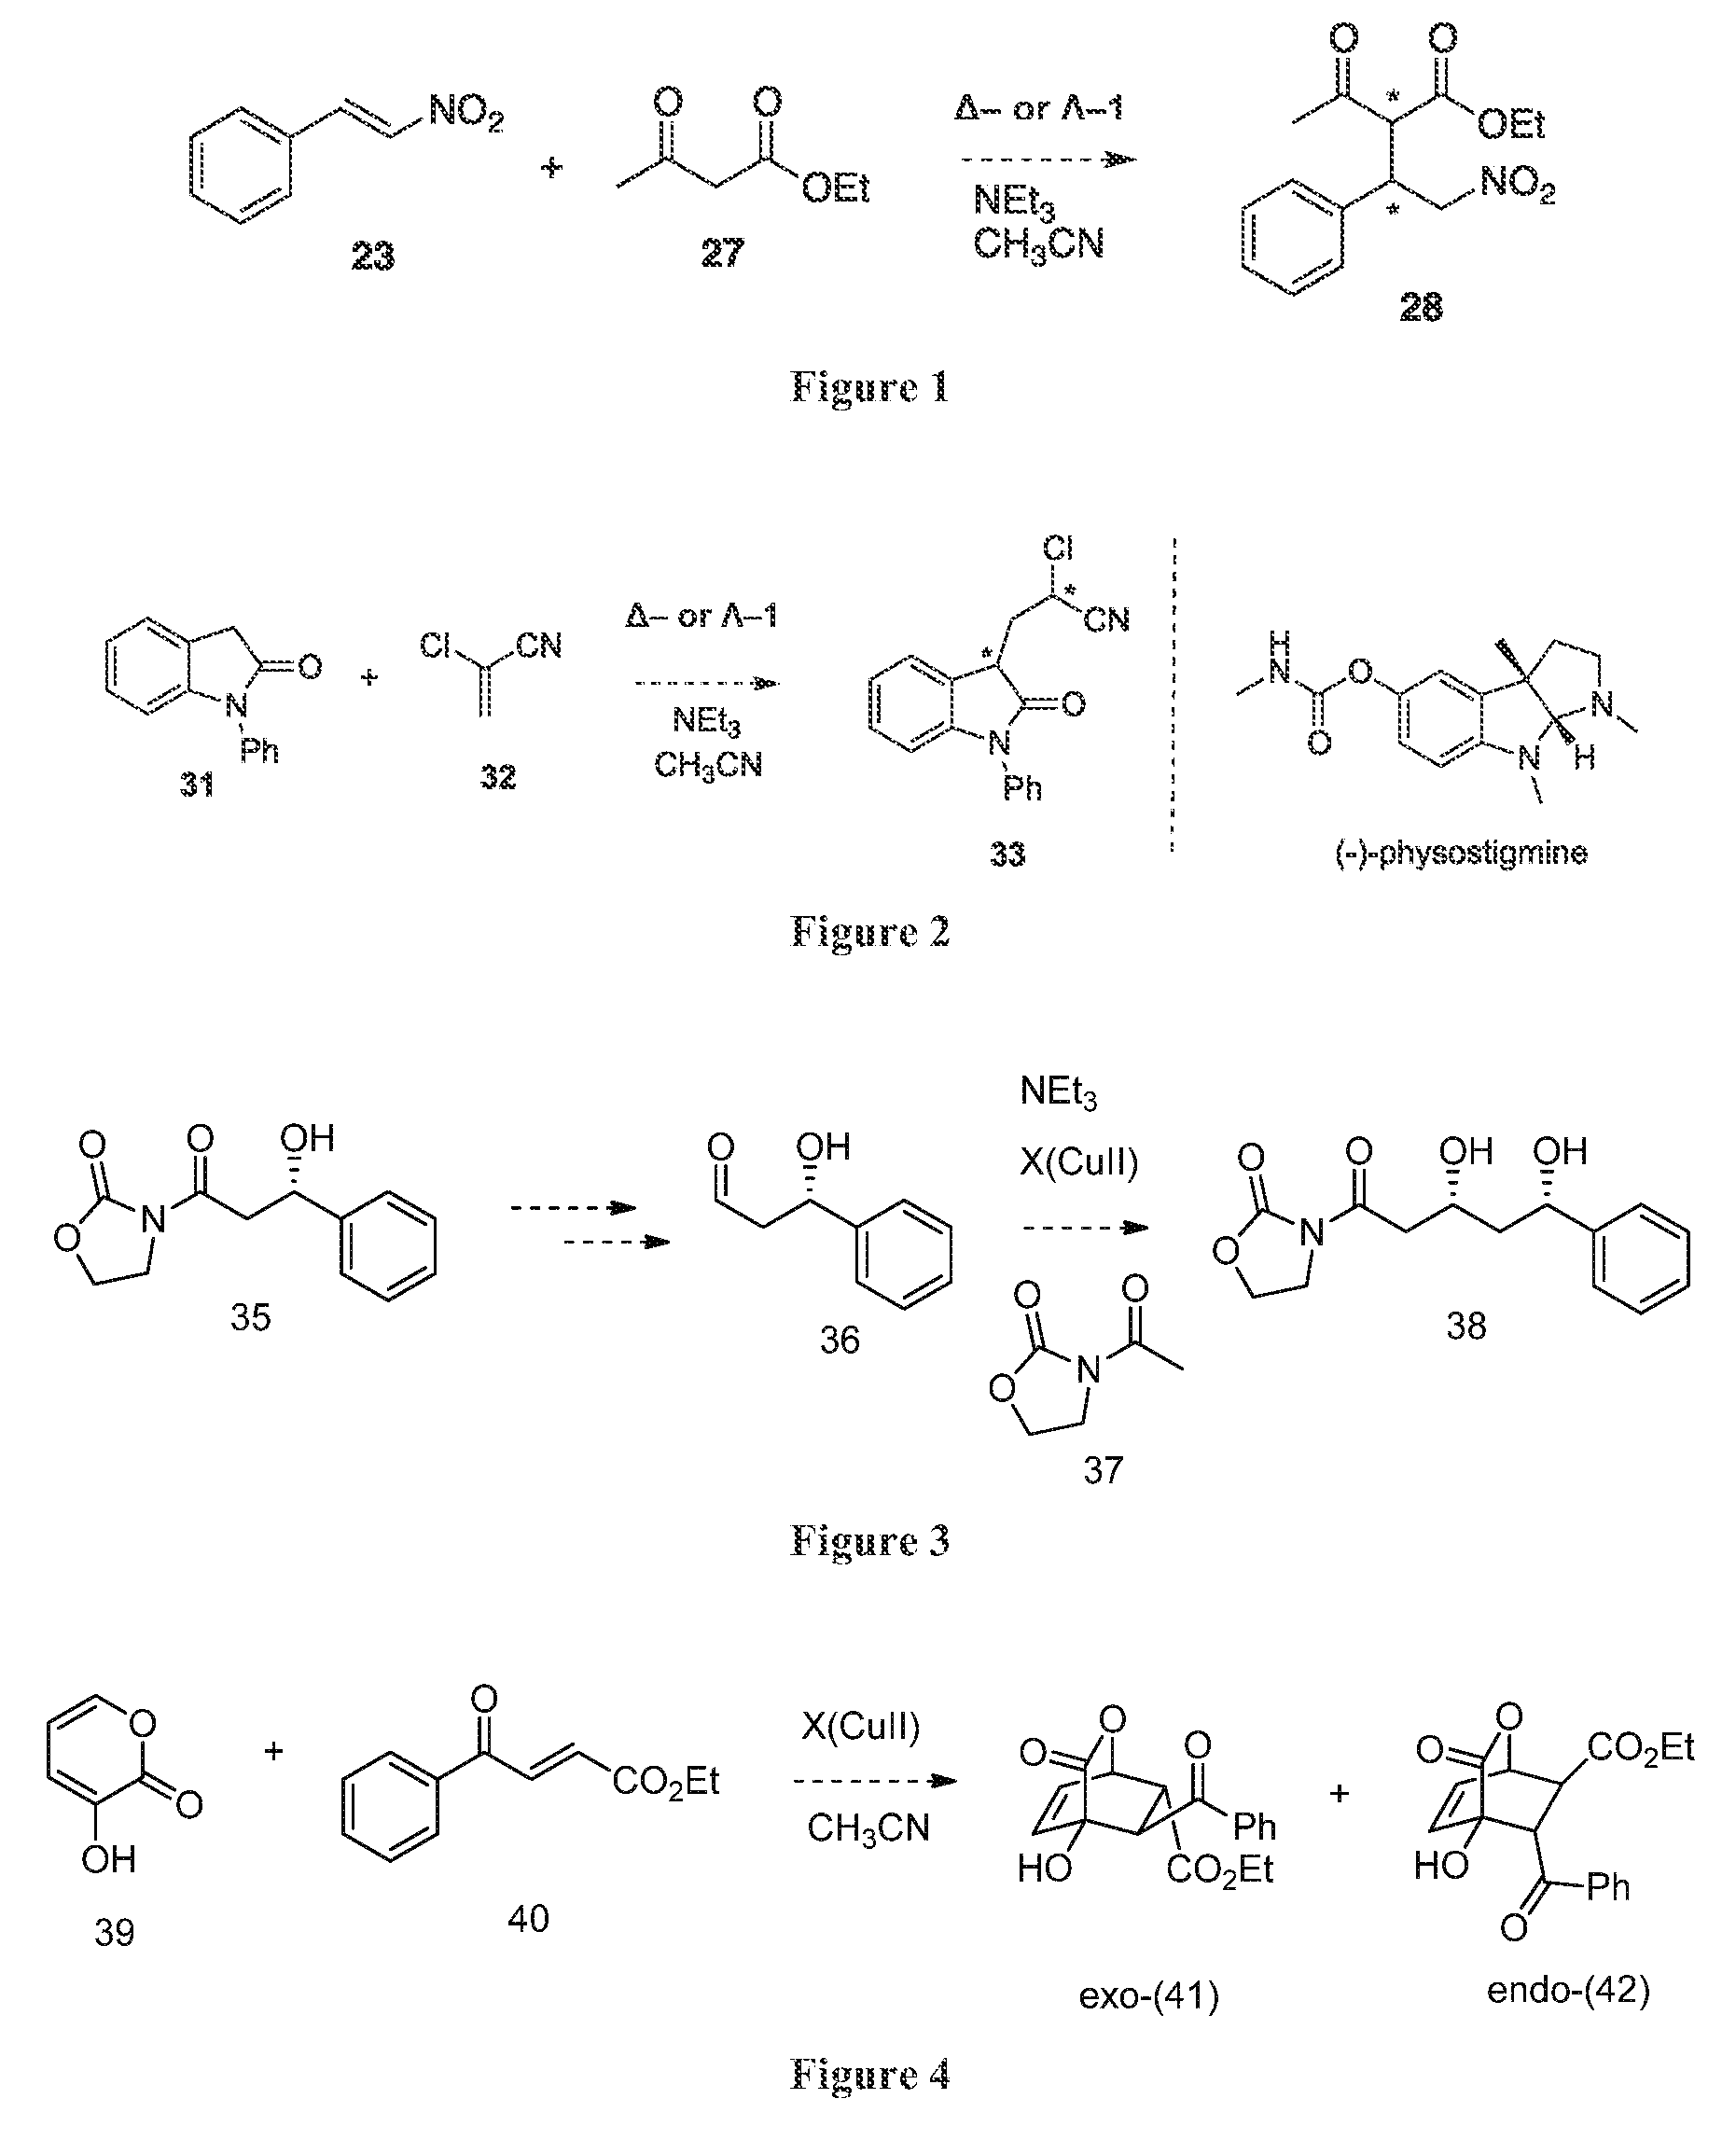 Asymmetric catalysts